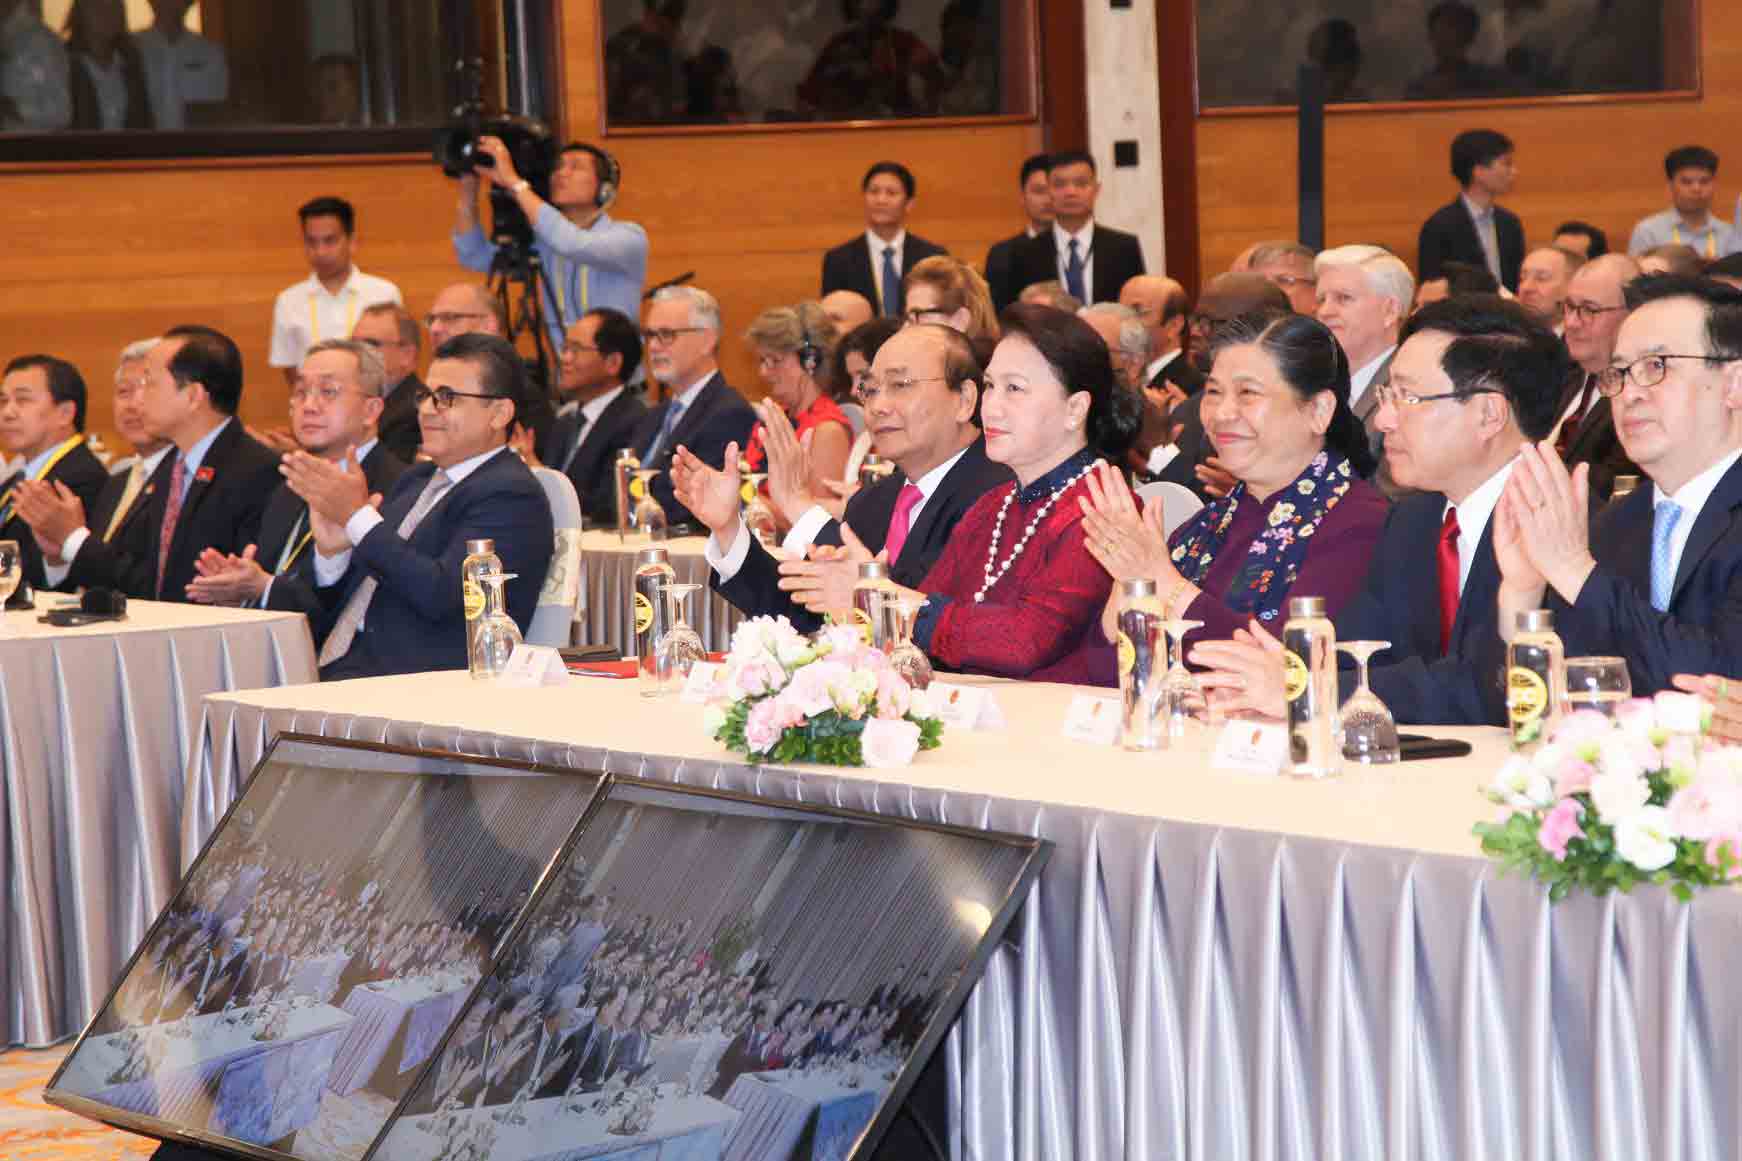 Chương trình nghệ thuật chào mừng khai mạc hội nghị thượng đỉnh cấp cao ASEAN lần thứ 36